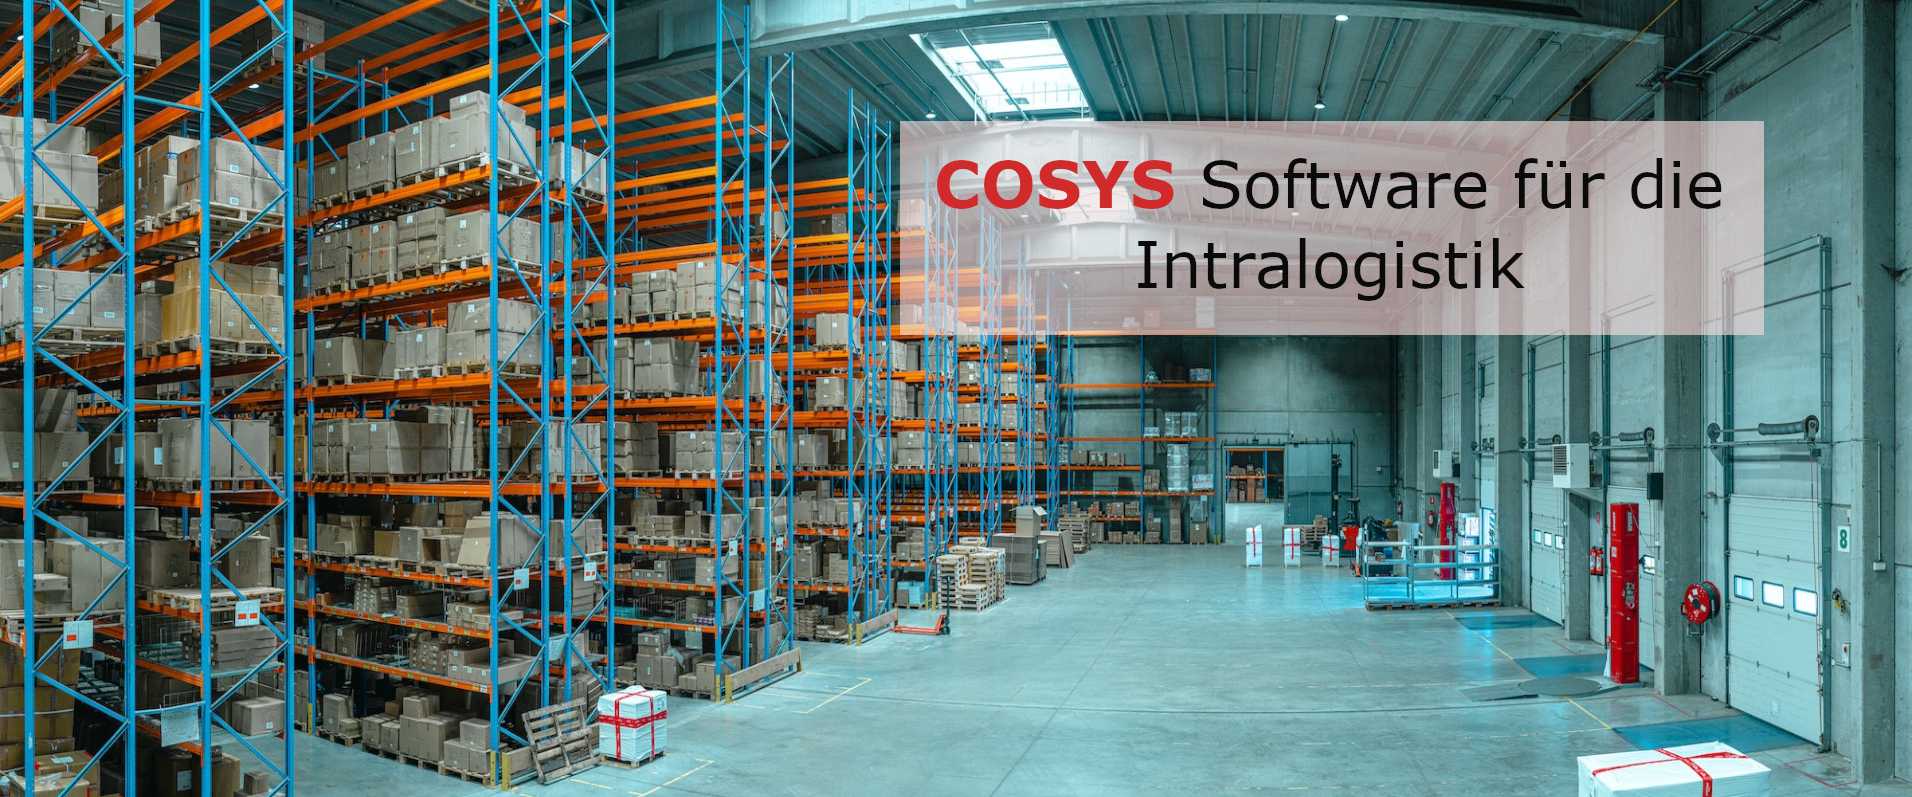 Steuern Sie Ihre Intralogistik mit COSYS Software